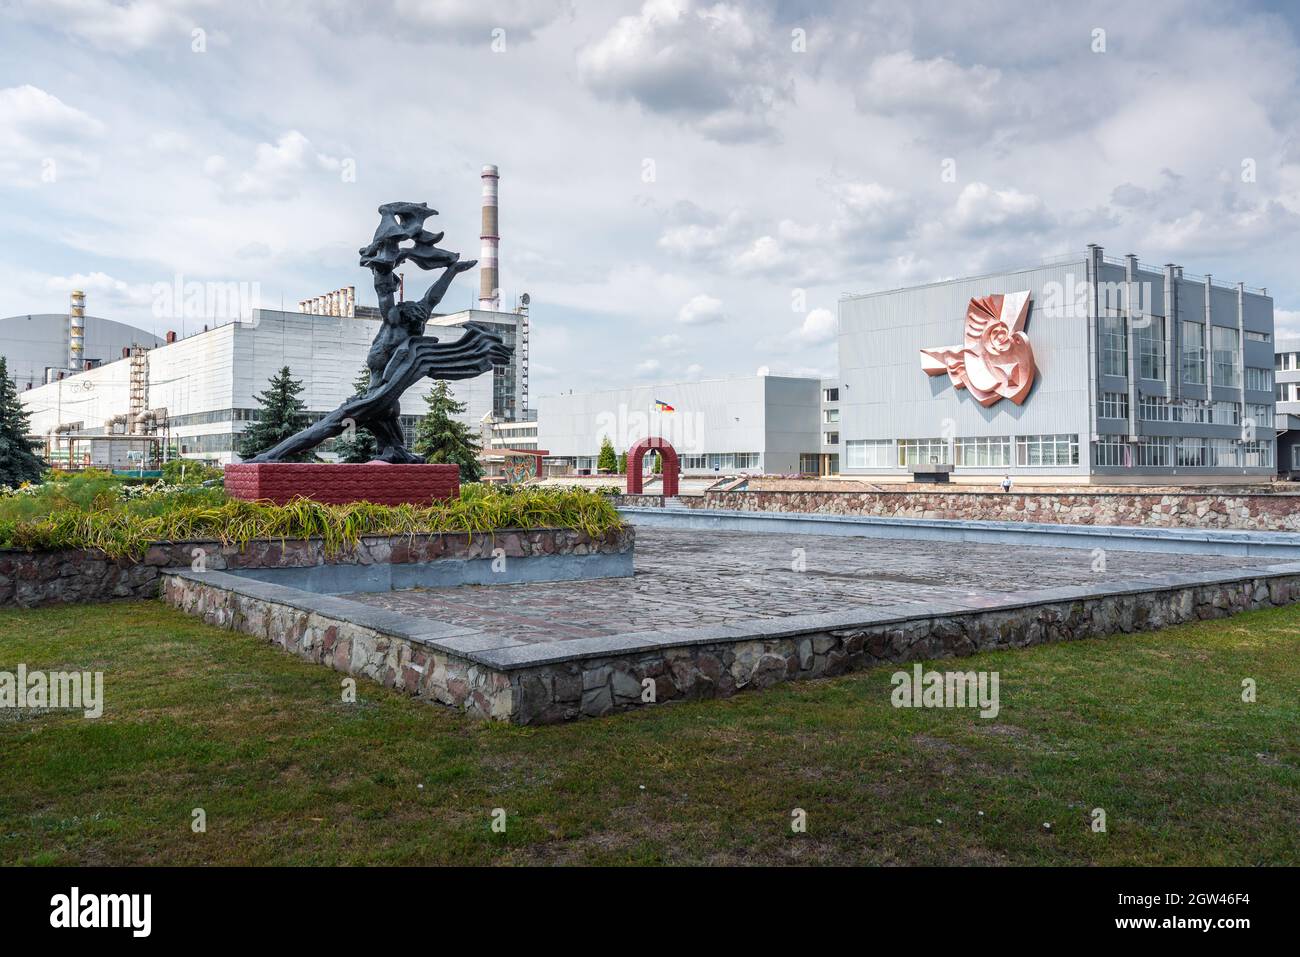 Verwaltungsgebäude und Prometheus-Skulptur im Kernkraftwerk Tschernobyl - Sperrzone Tschernobyl, Ukraine Stockfoto